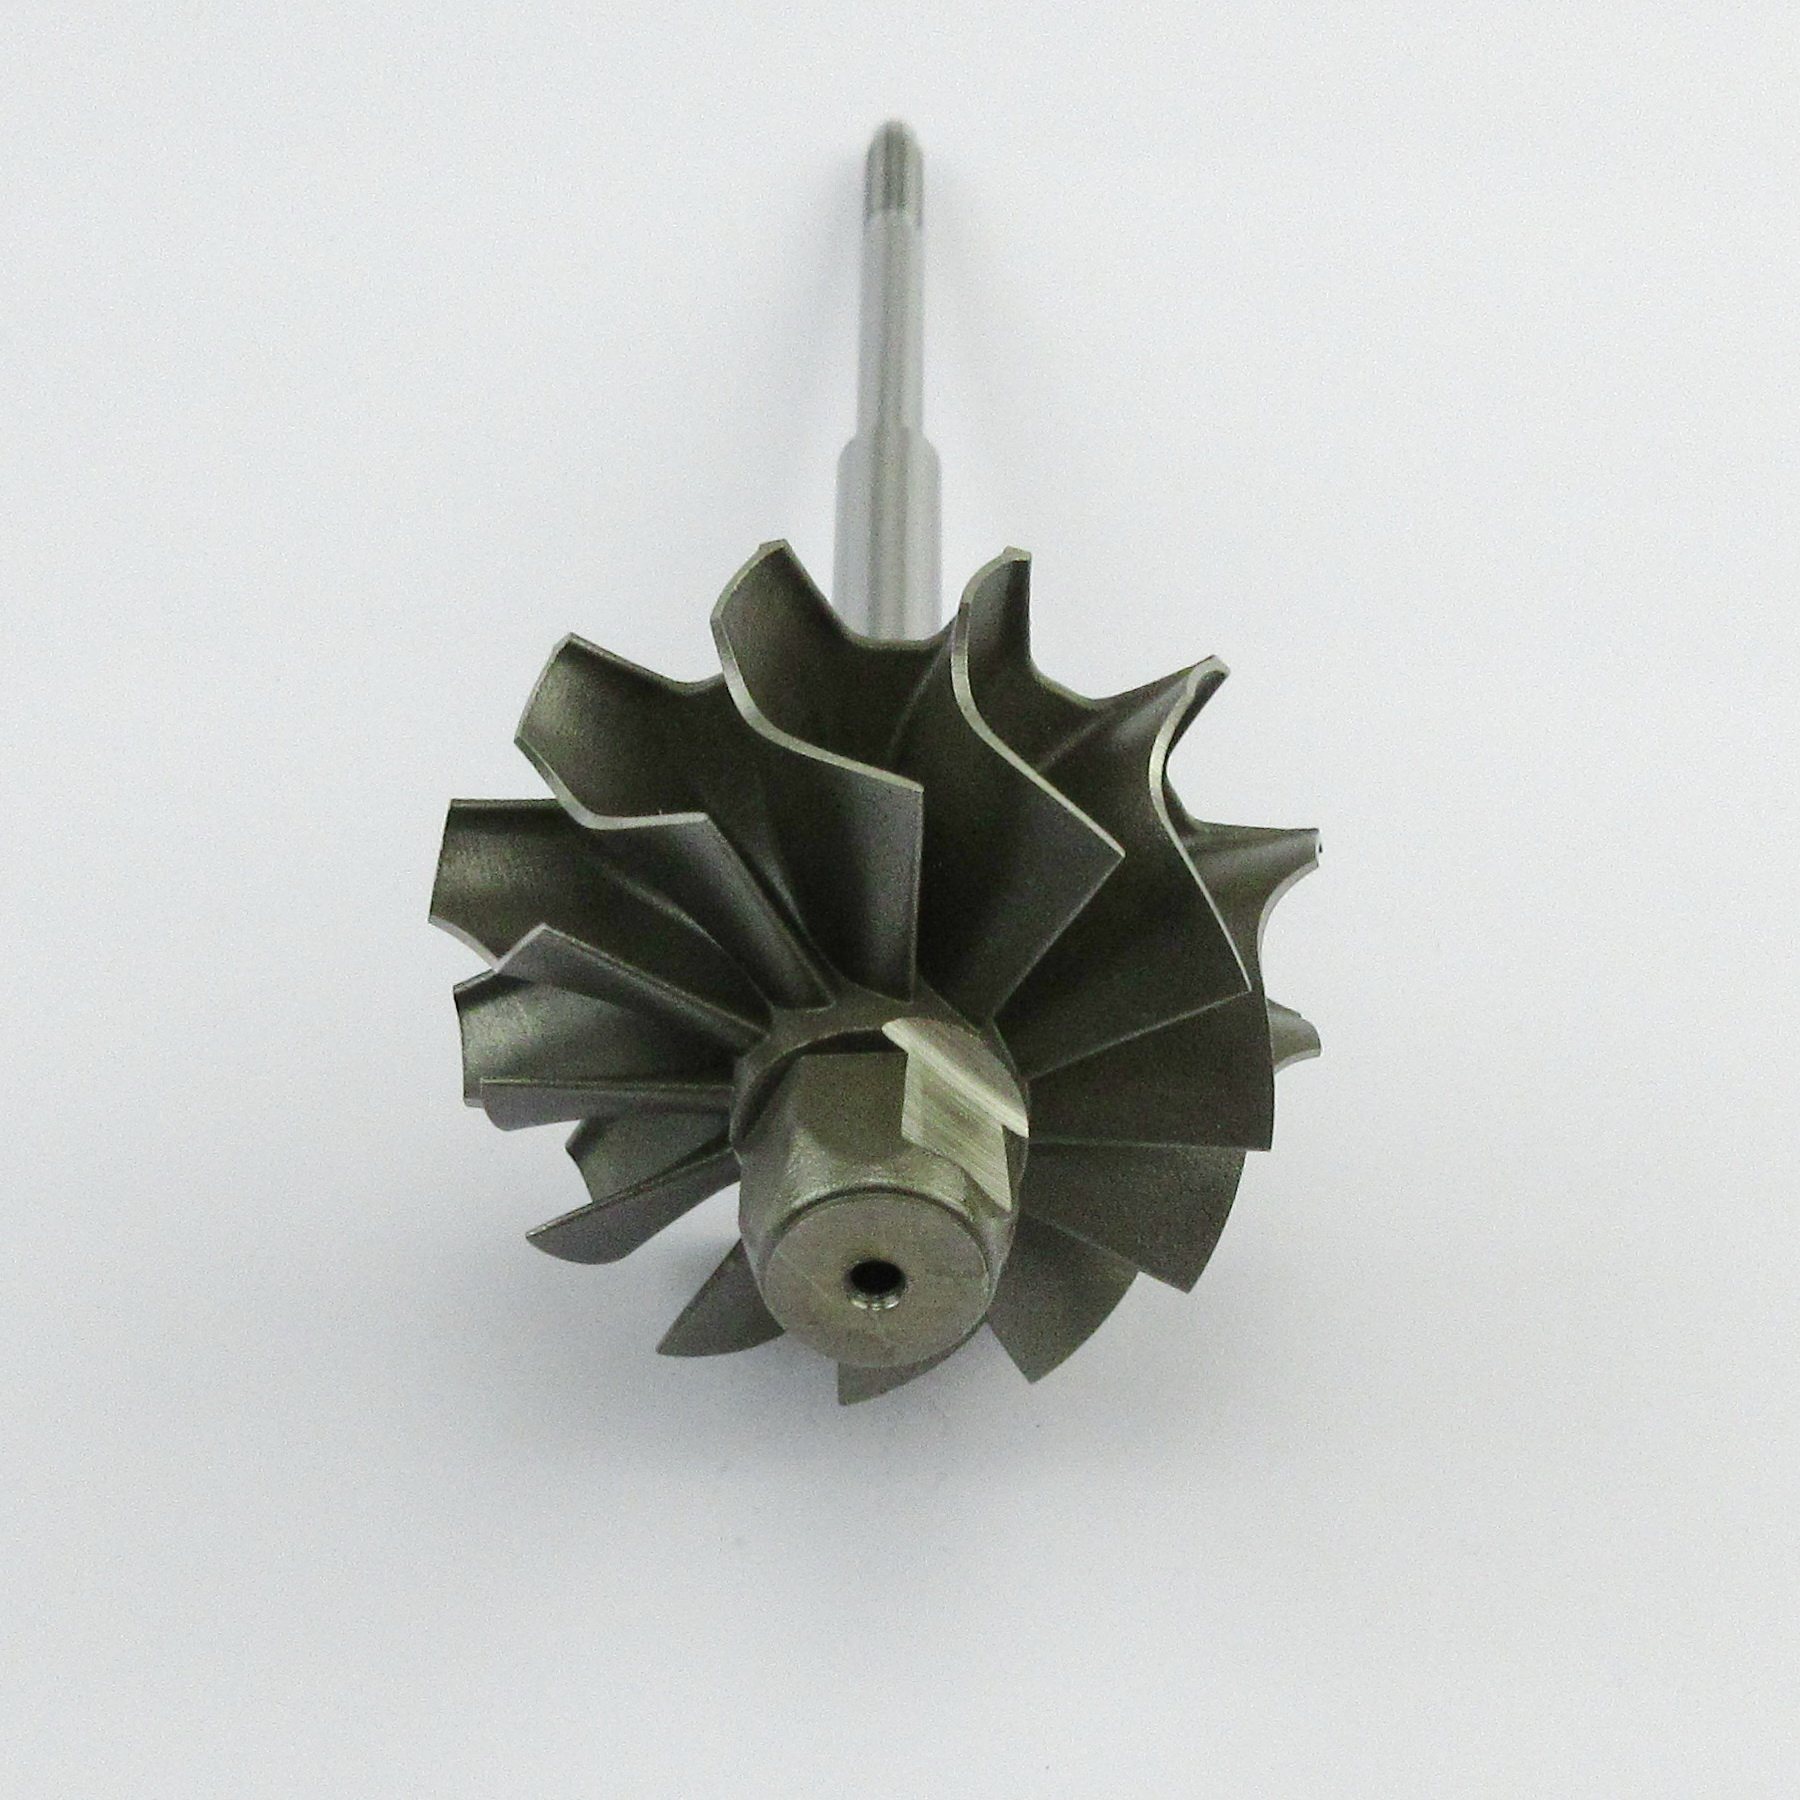 K04/ 5304-120-5010 Turbine Shaft Wheel